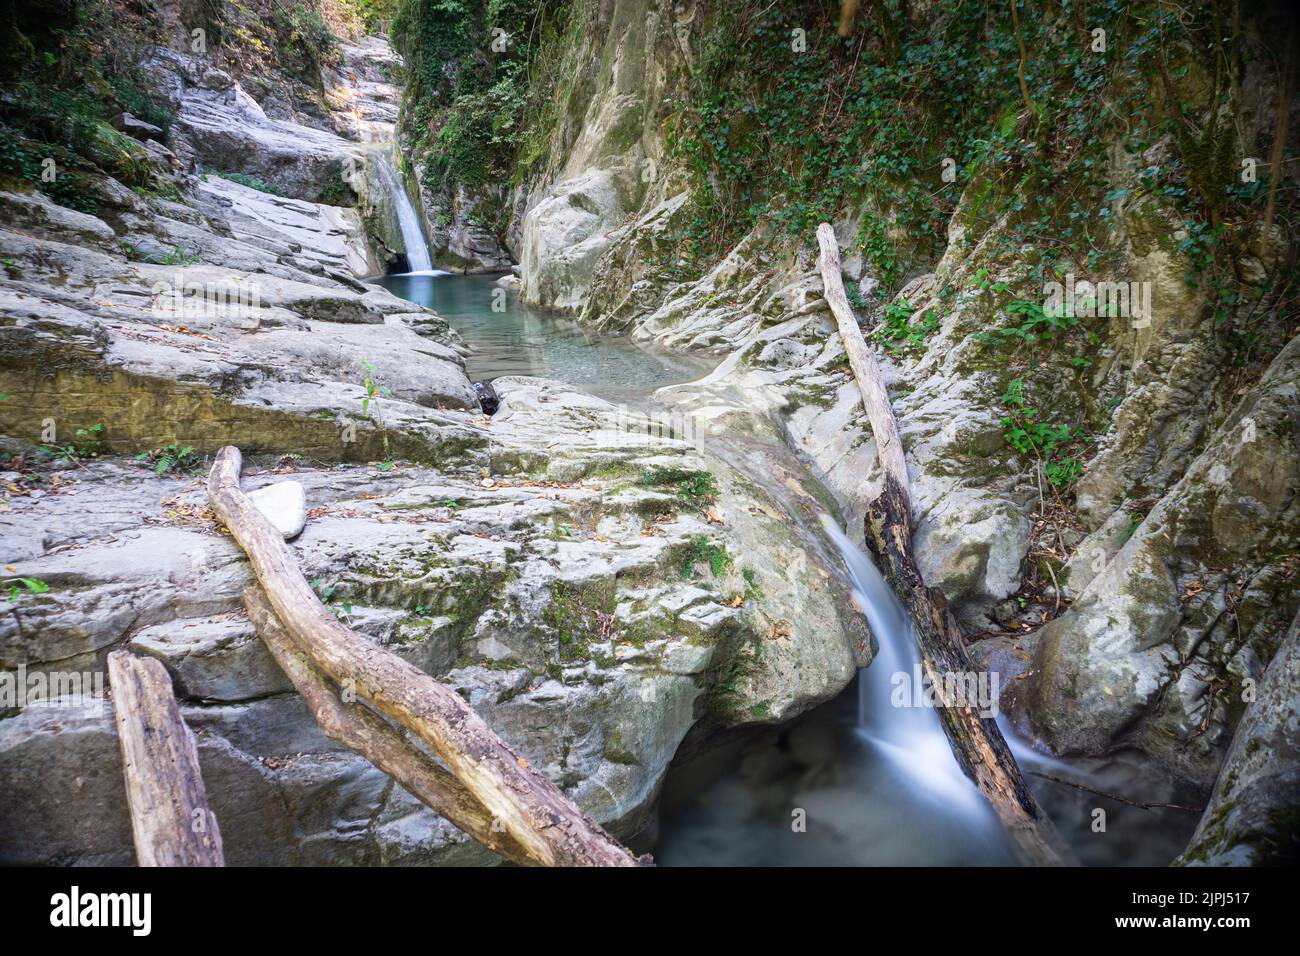 Bozzi di Magliano (oder del Pontacio). Natürliche Wasserfälle, die durch den Bach gebildet werden. Befinden sich in der grünen Lunigiana. Toskana Stockfoto